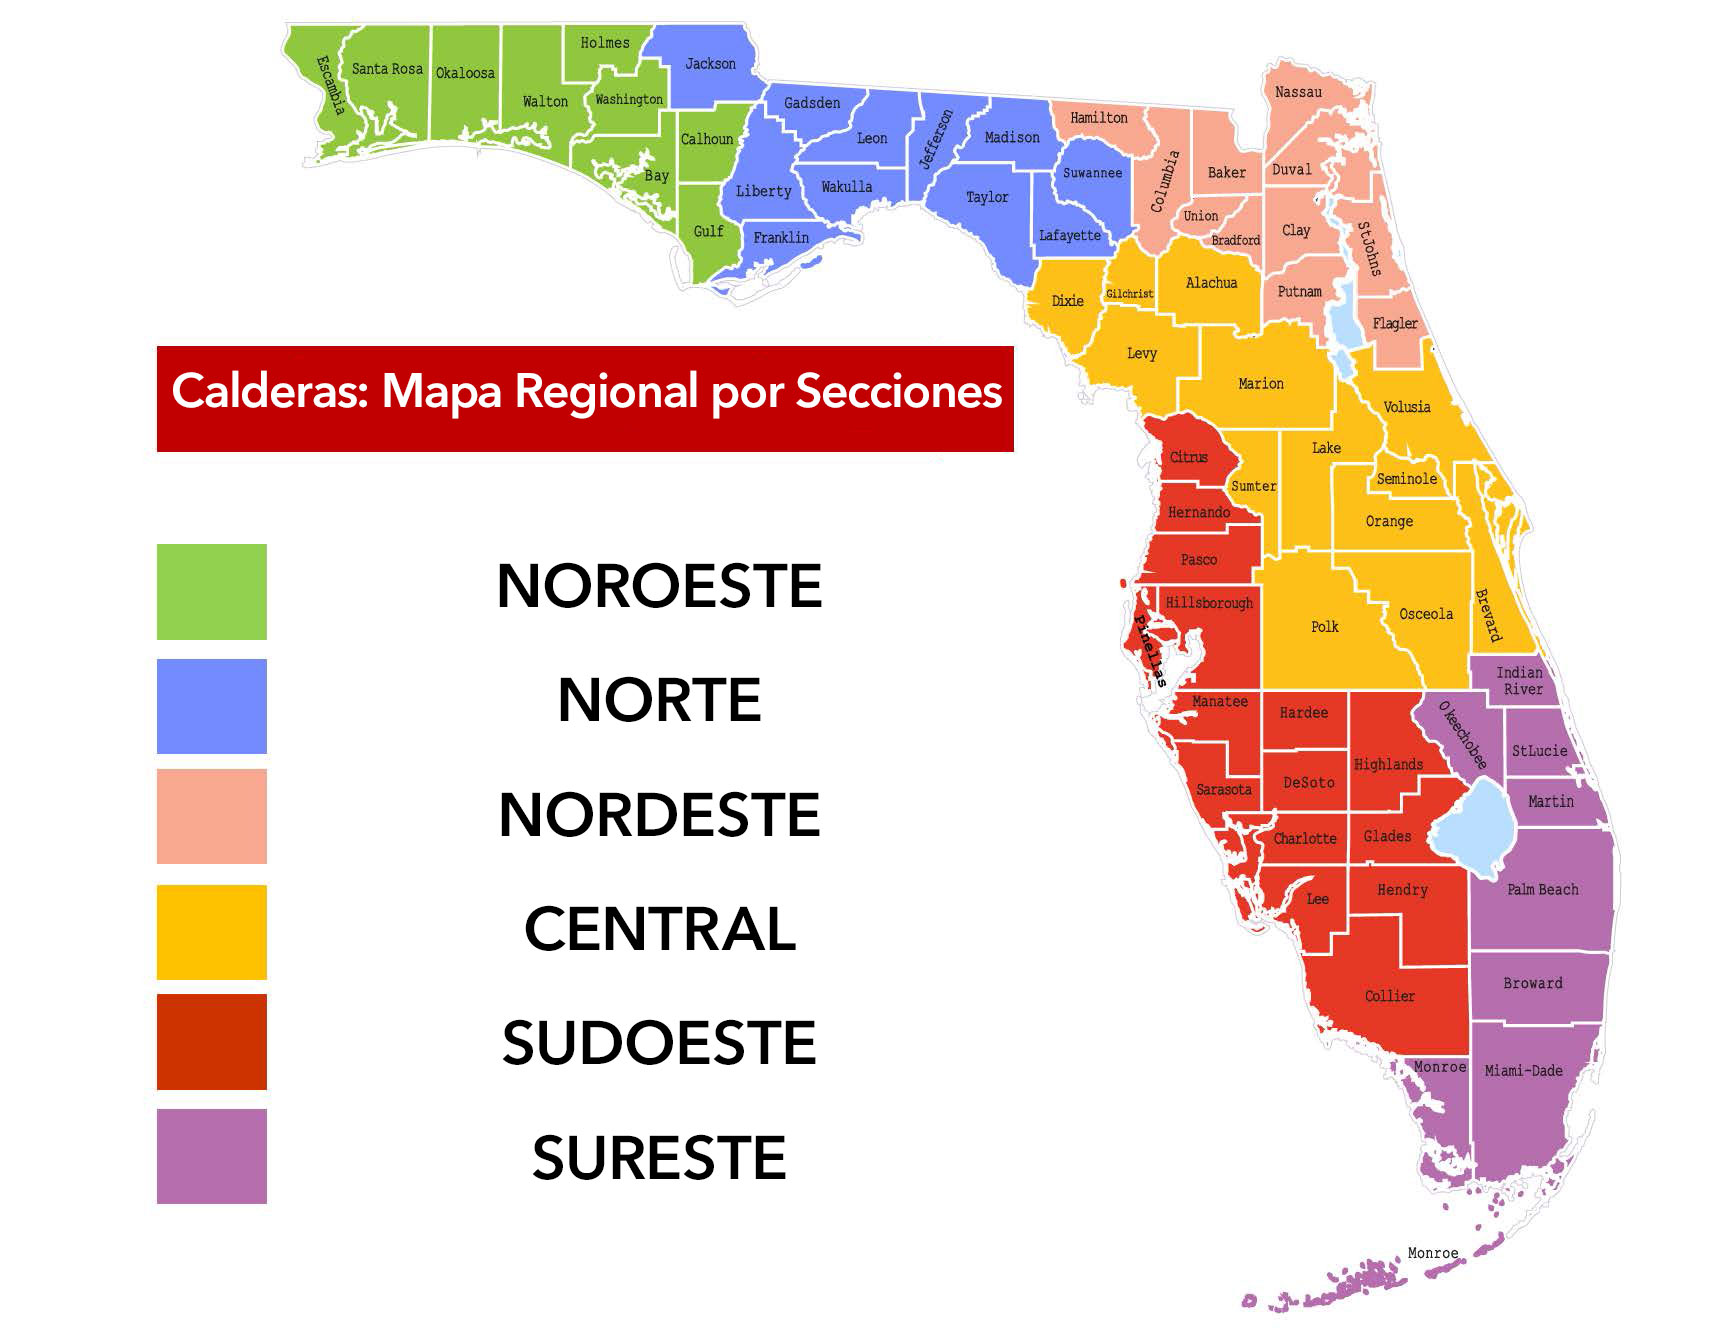 Regiones de calderas codificadas por color según el condado